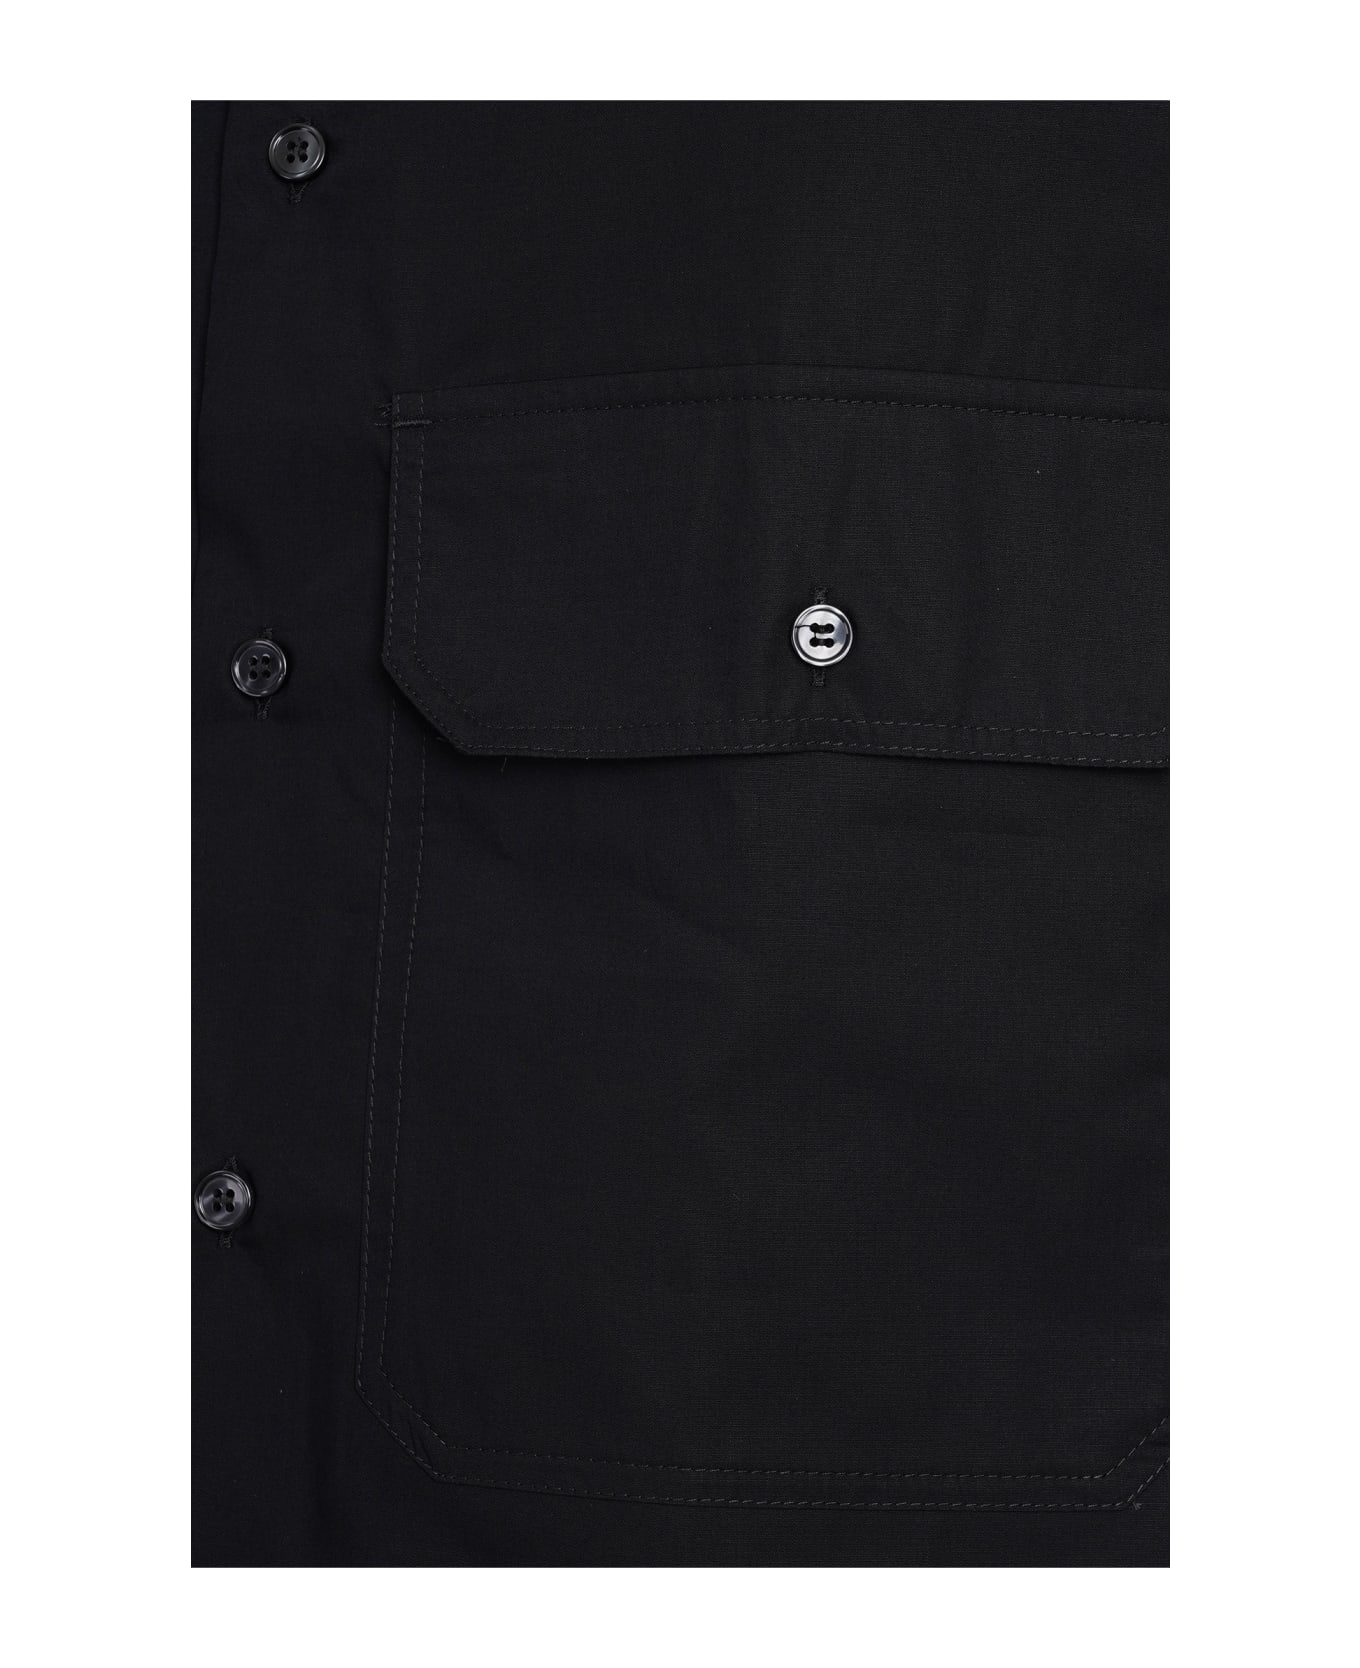 Emporio Armani X3X151 Shirt In Black Cotton - Nero